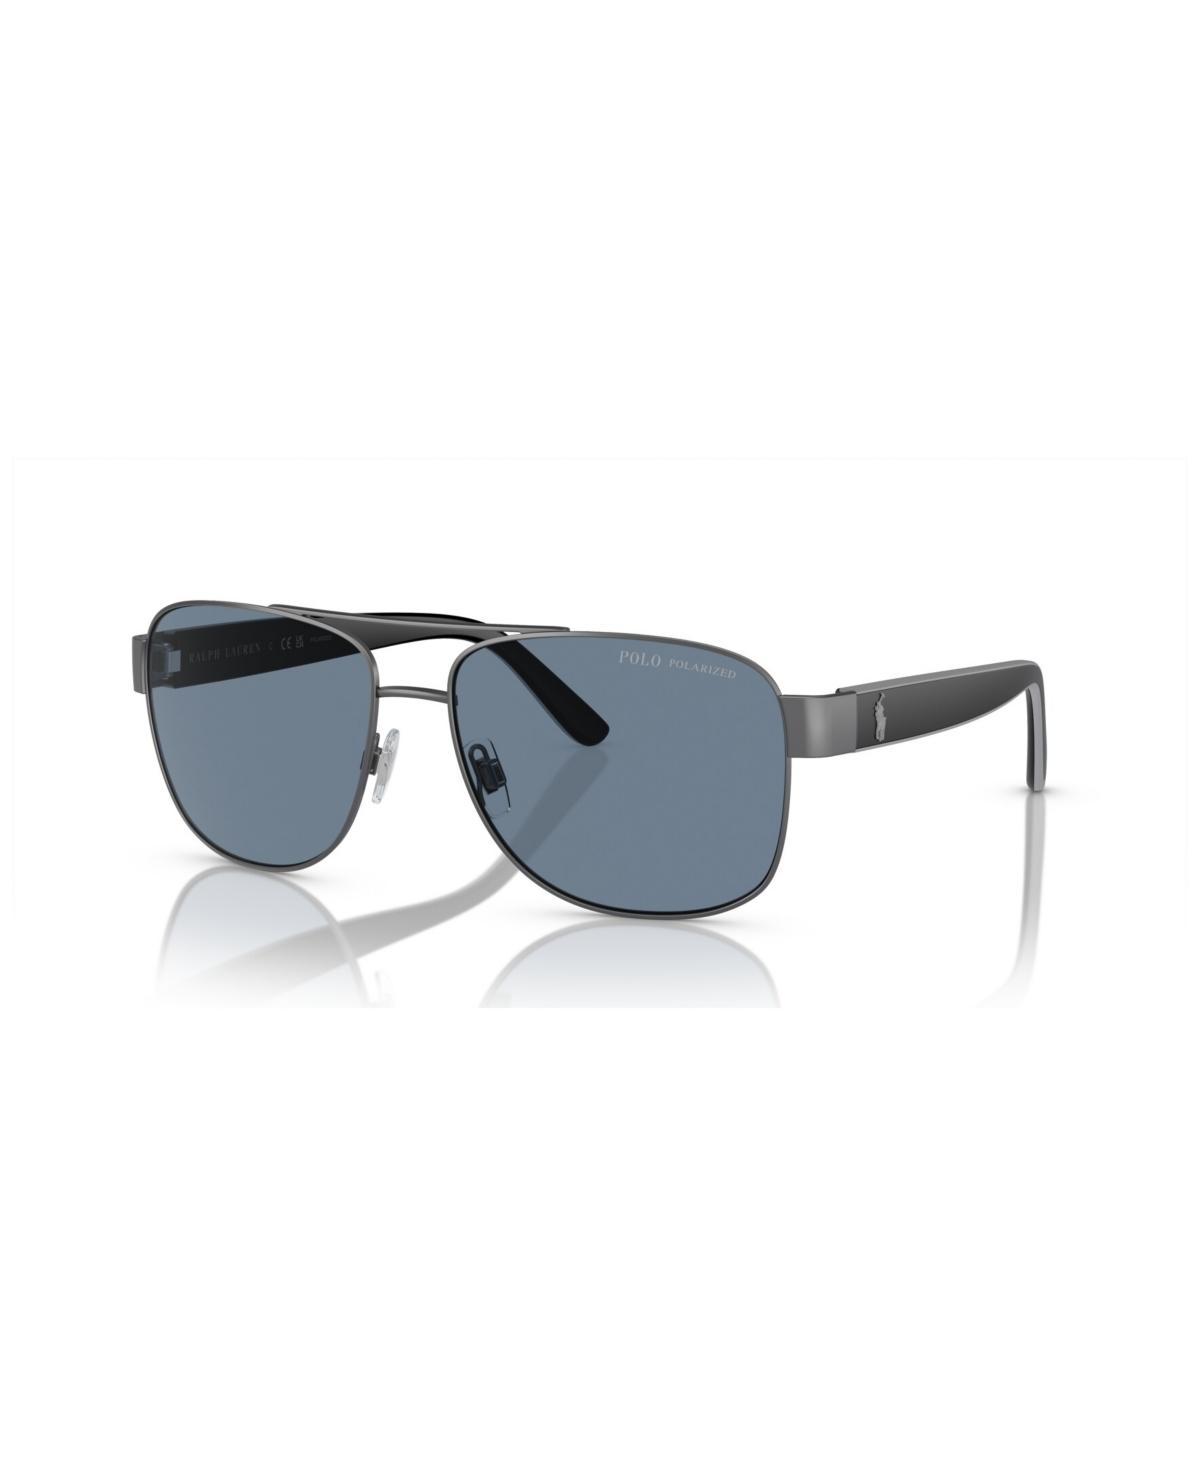 Ralph Lauren Sunglasses for Women & Men